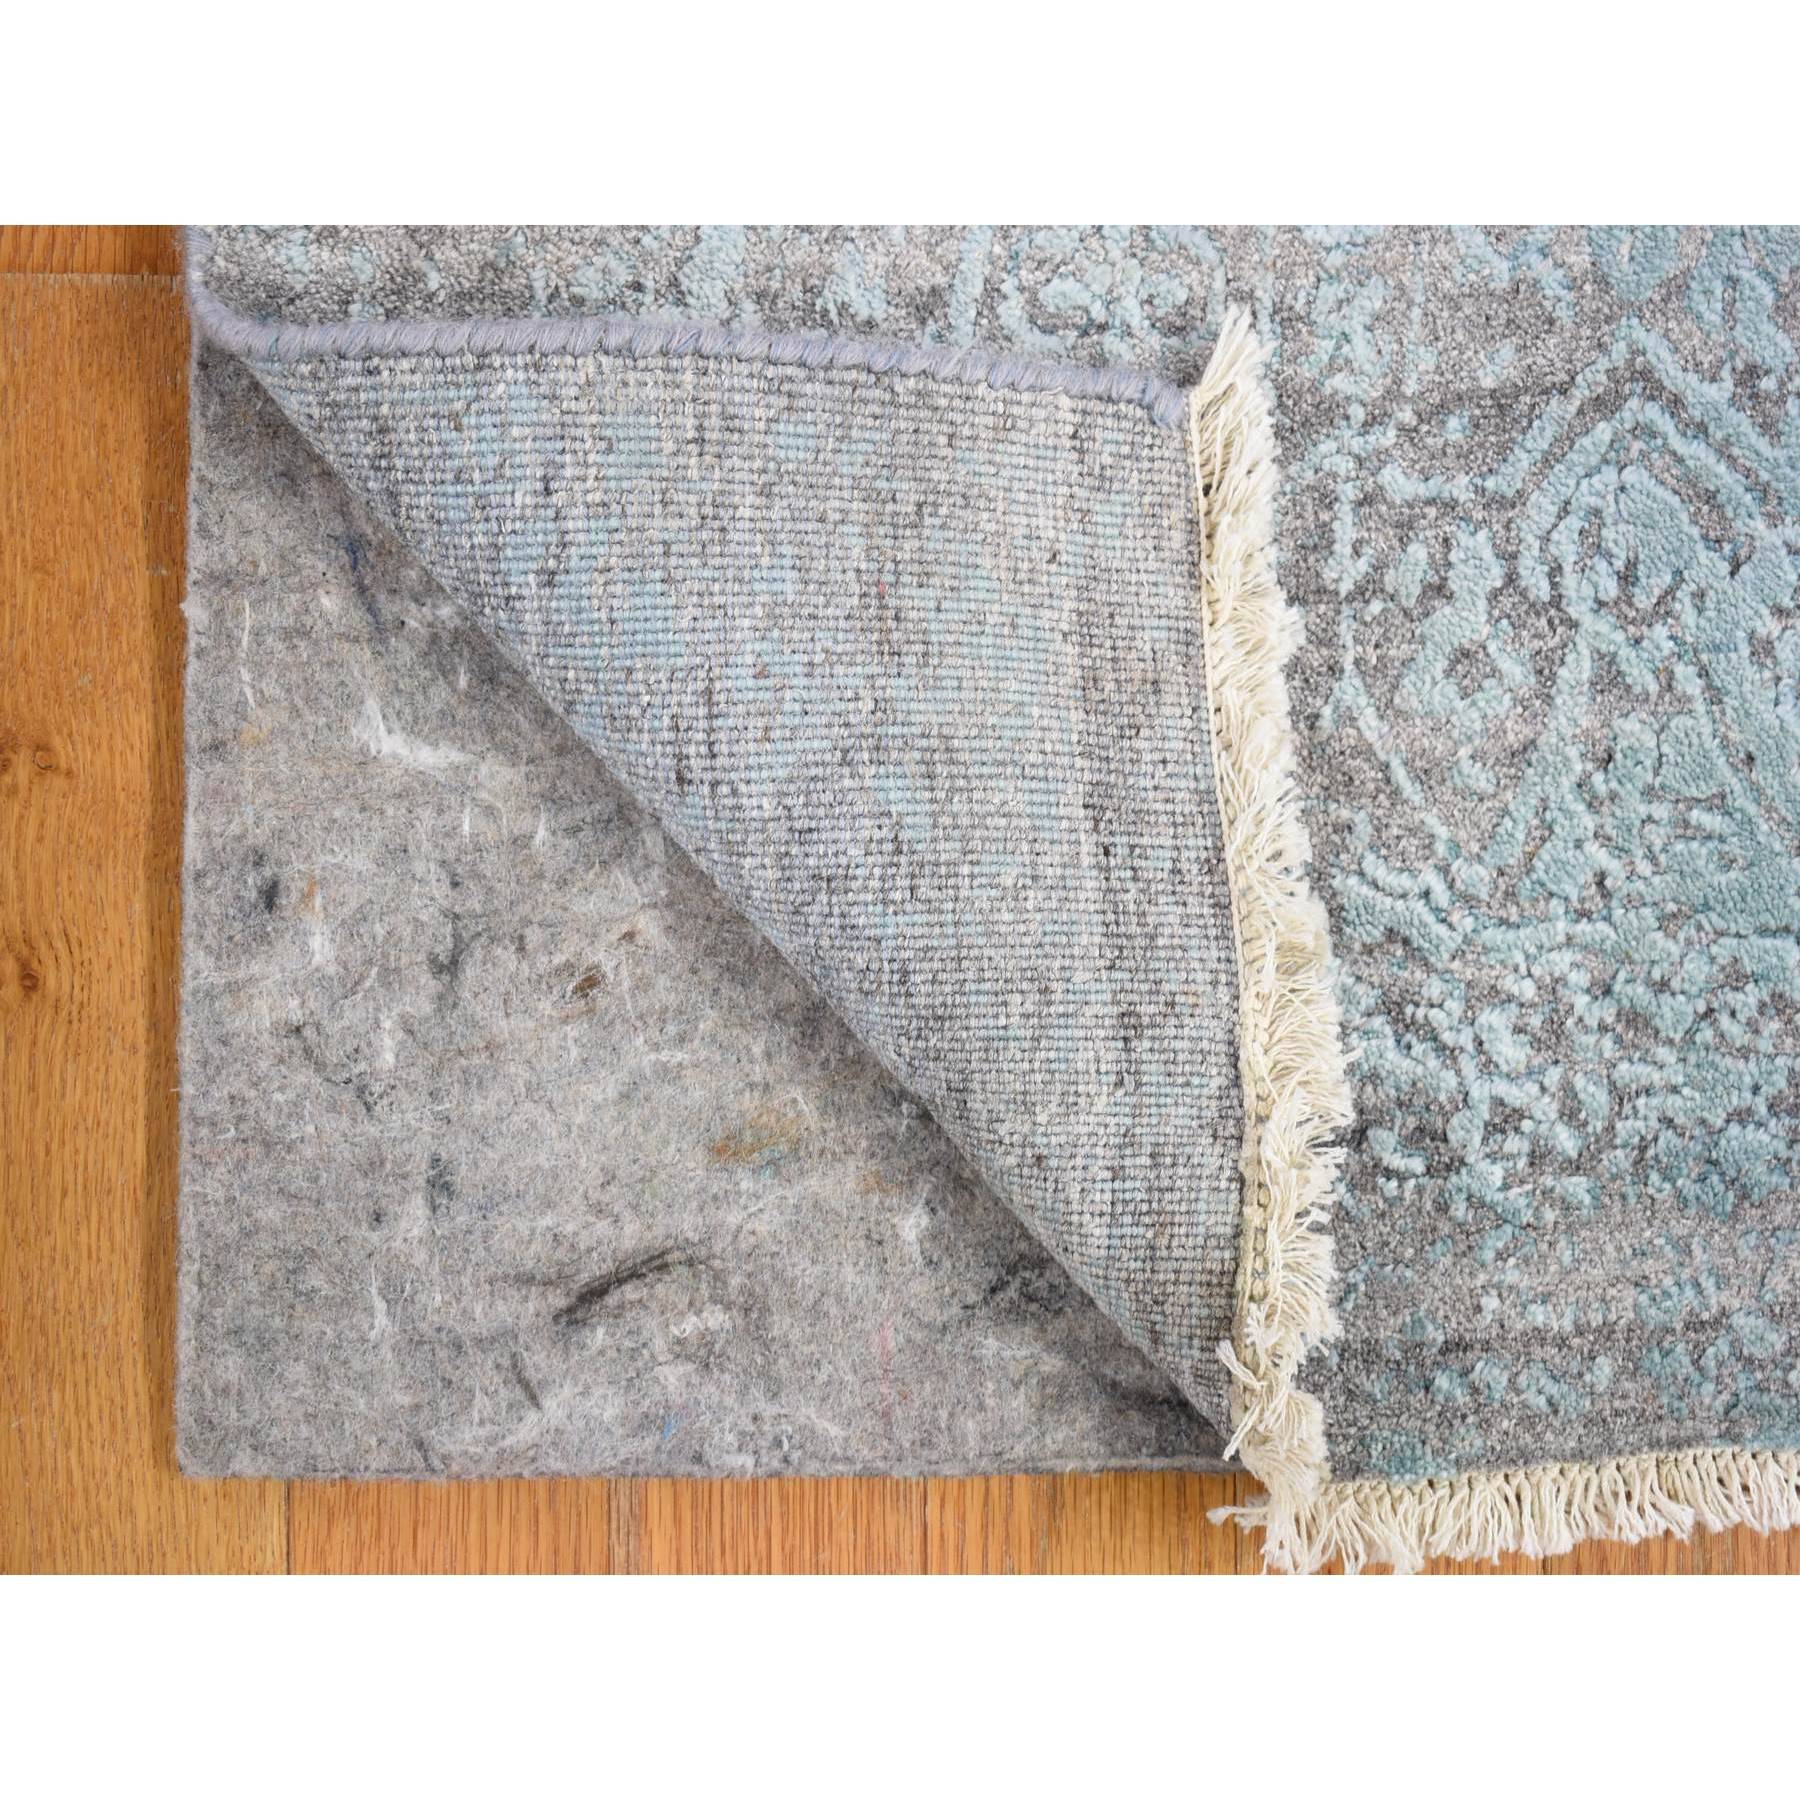 2'7"x14' Seafoam Green Wool and Pure Silk Hand Woven Broken Persian Design Oriental XL Runner Rug 